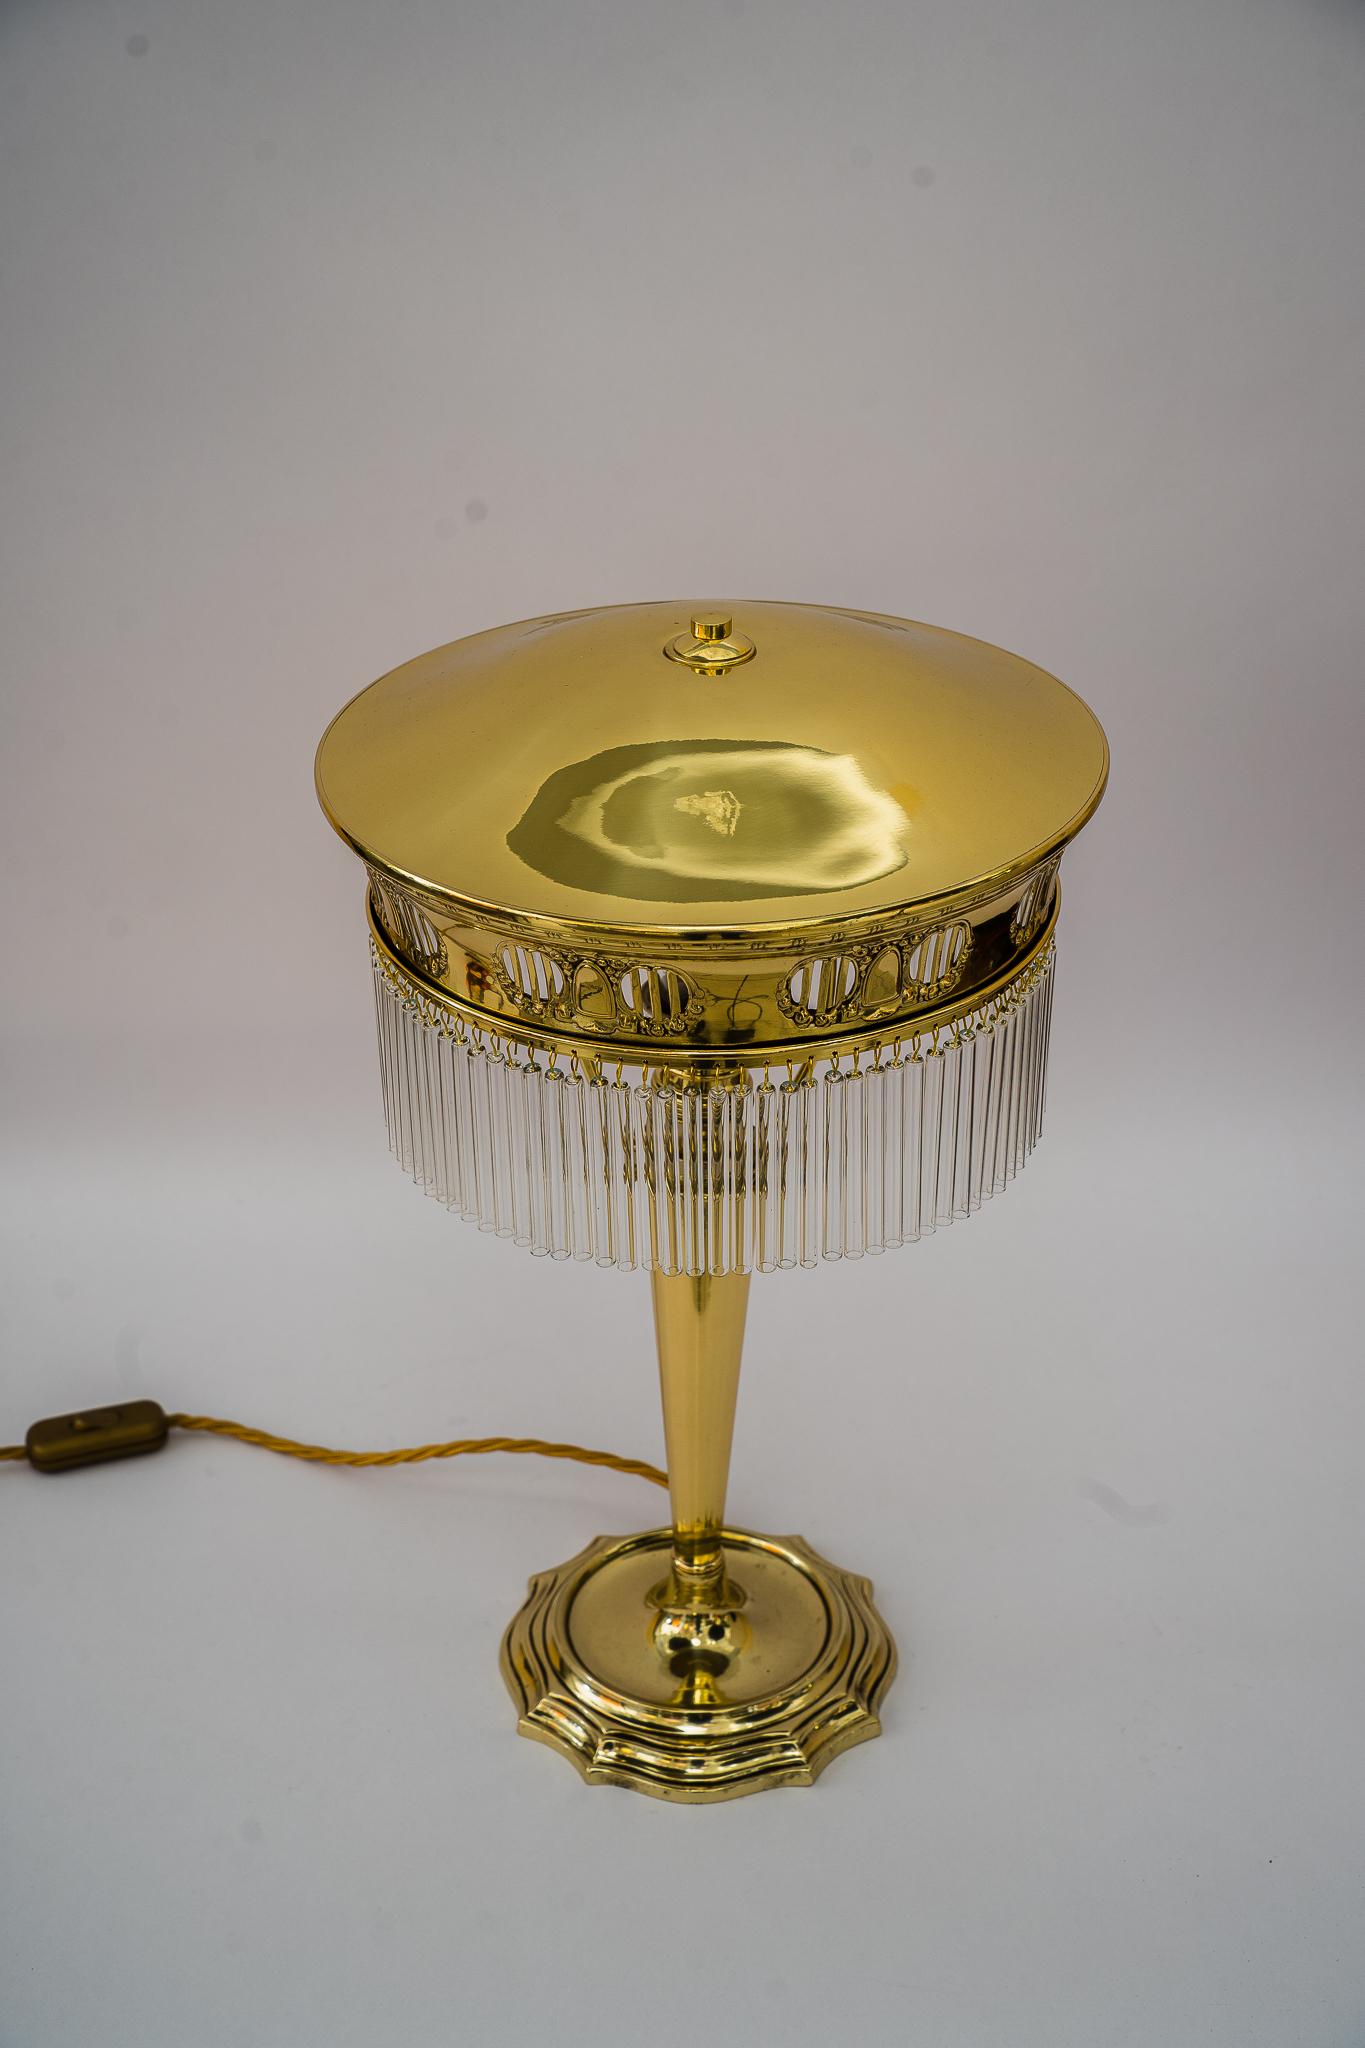 Art Deco Tischlampe wien 1920s
Poliert und emailliert
Die Glasstäbe werden ersetzt ( neu )